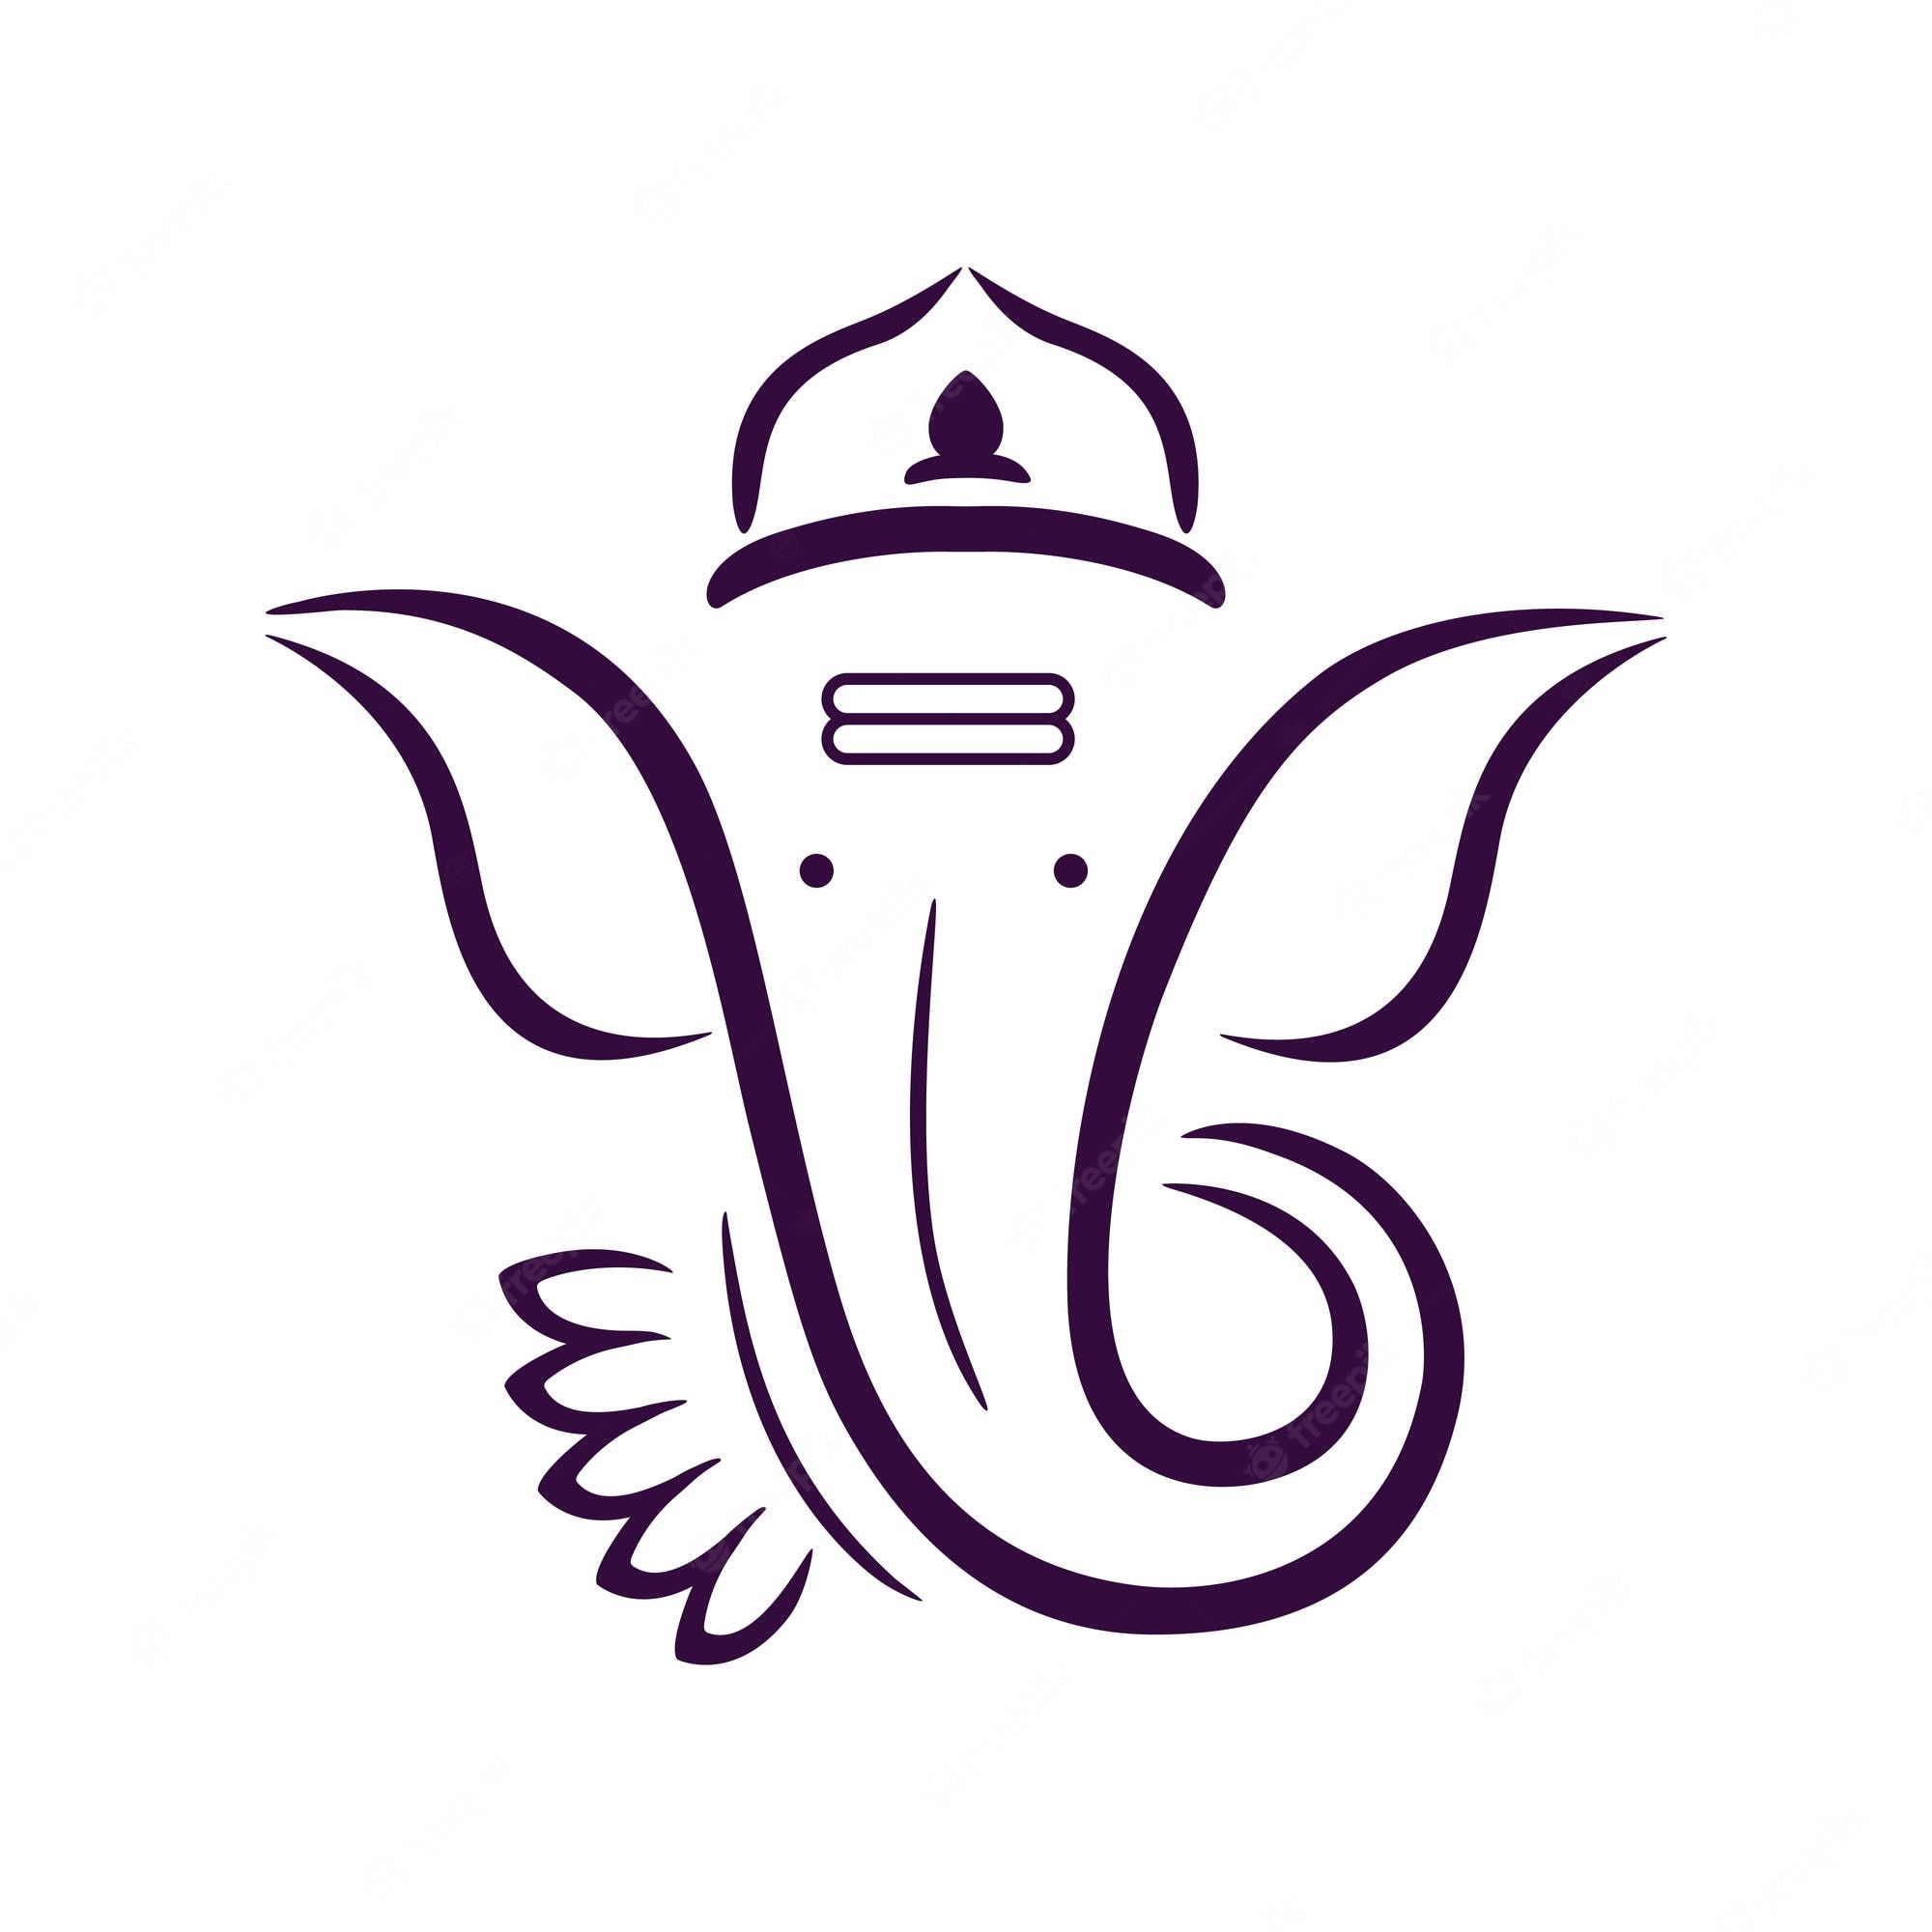 Ganesh Images - Free Download on Freepik